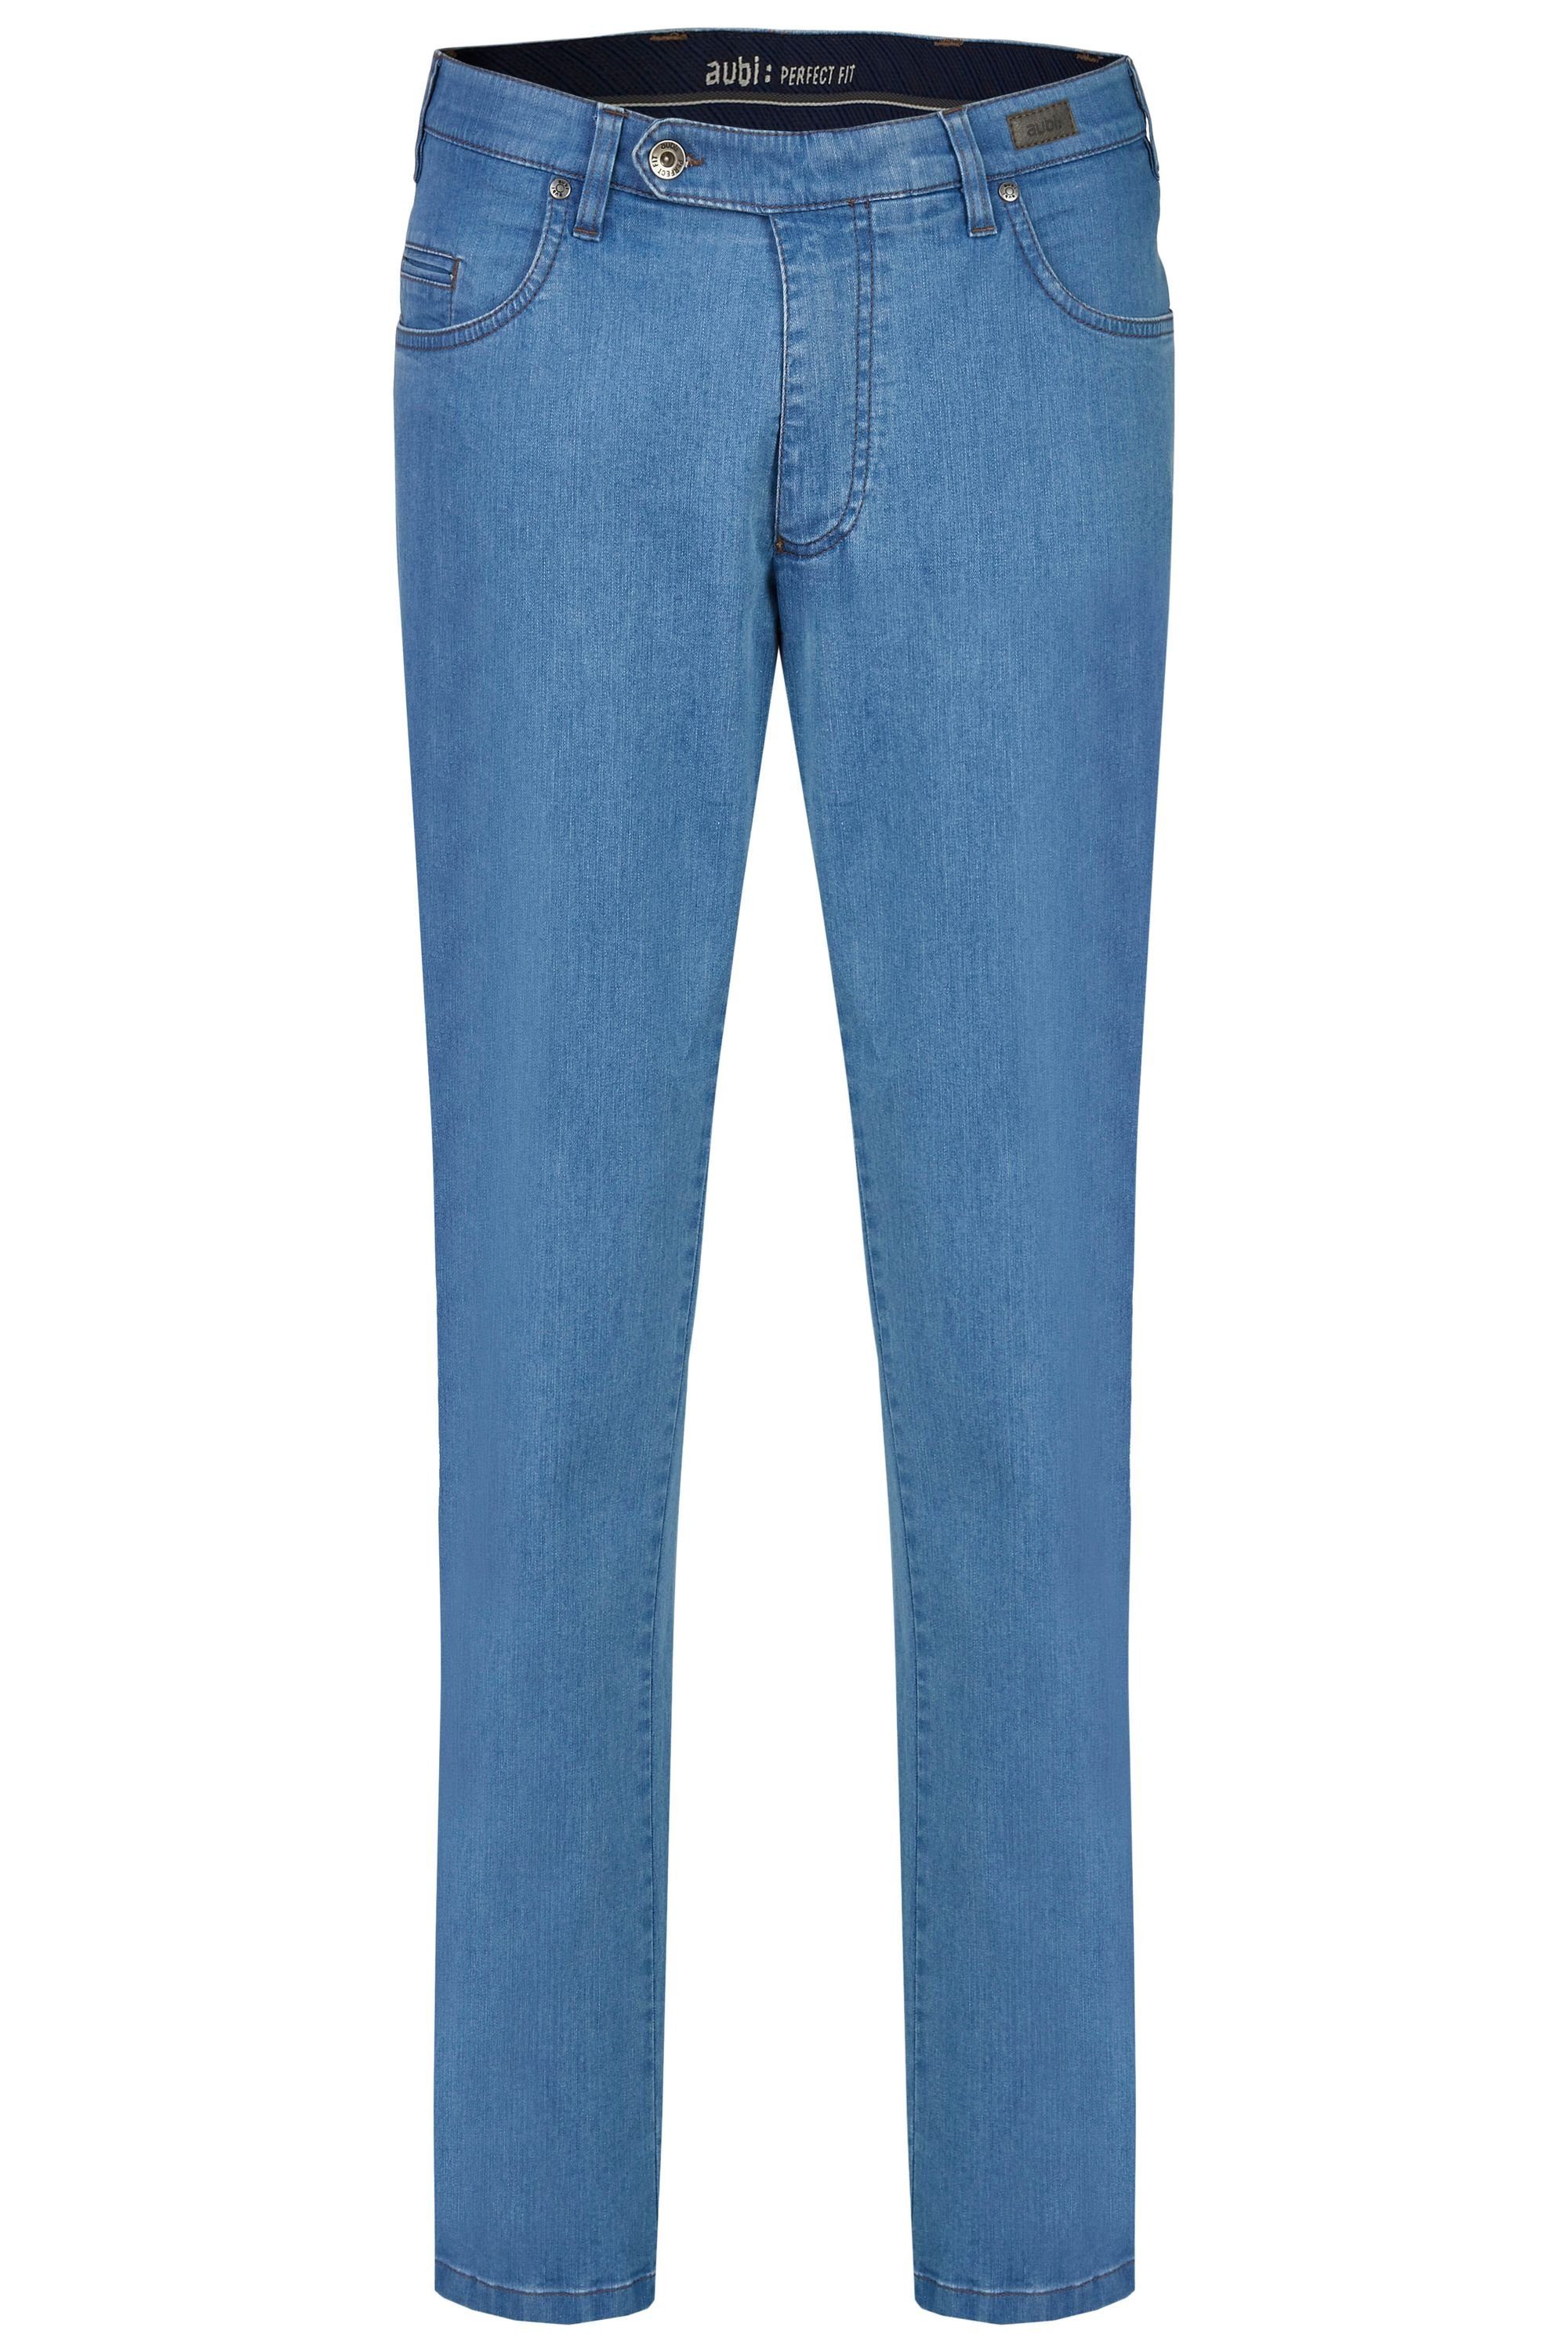 aubi: Bequeme Jeans aubi Perfect bleached aus 577 Jeans Flex Baumwolle Stretch Modell Sommer Herren (43) Hose High Fit